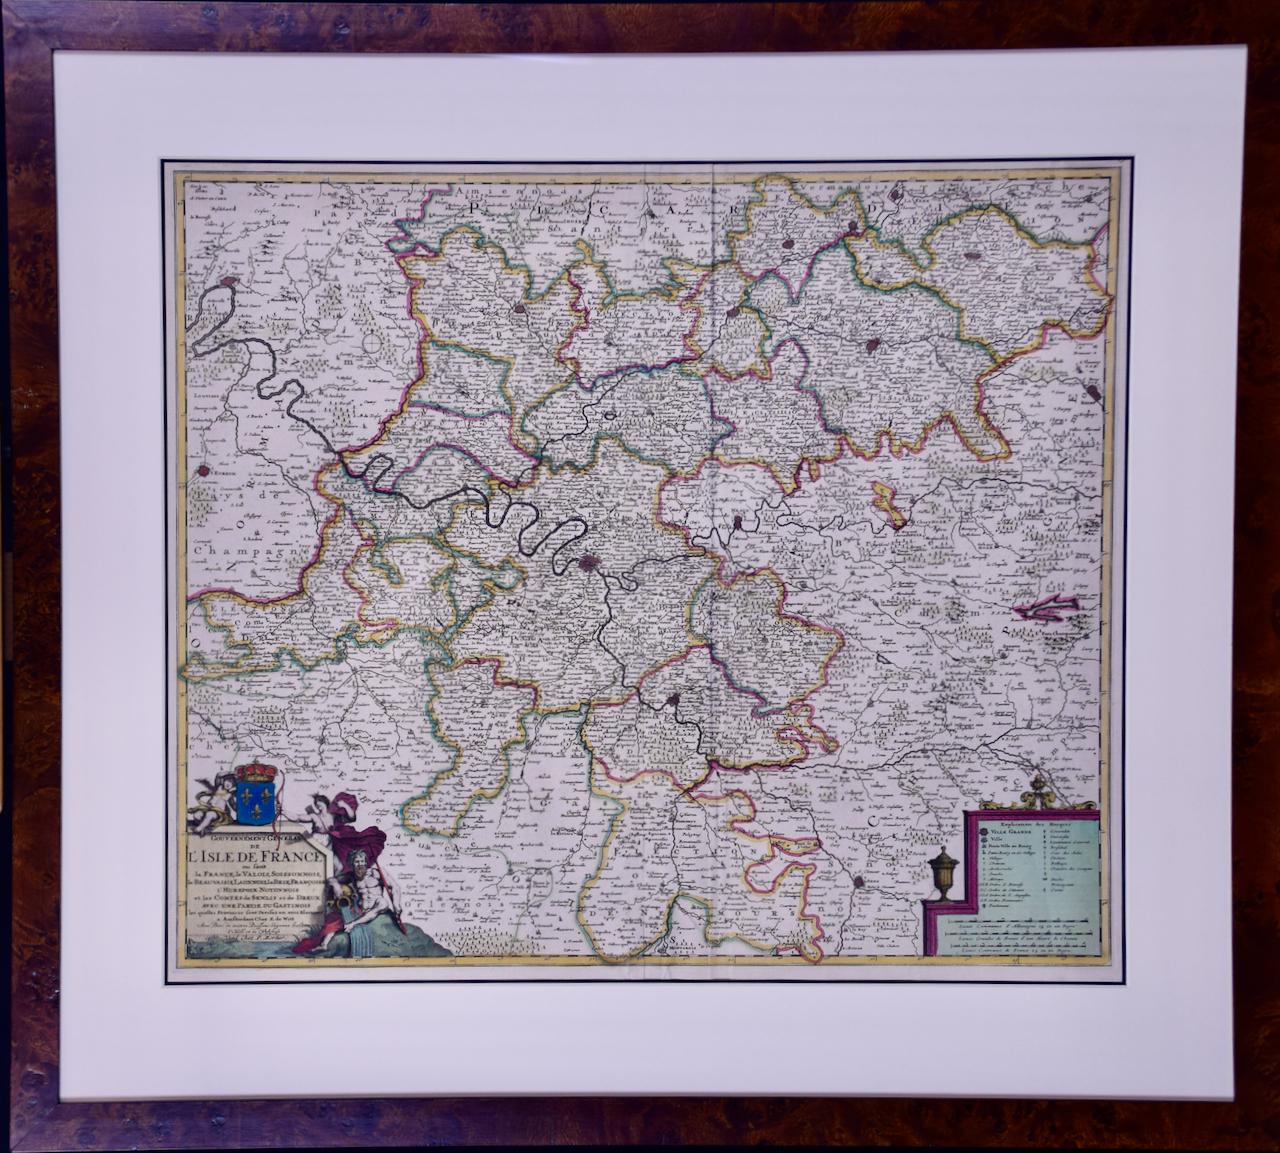 Frederick de Wit Print – L'Isle de France: Eine handkolorierte Karte aus dem 17. Jahrhundert von De Wit 